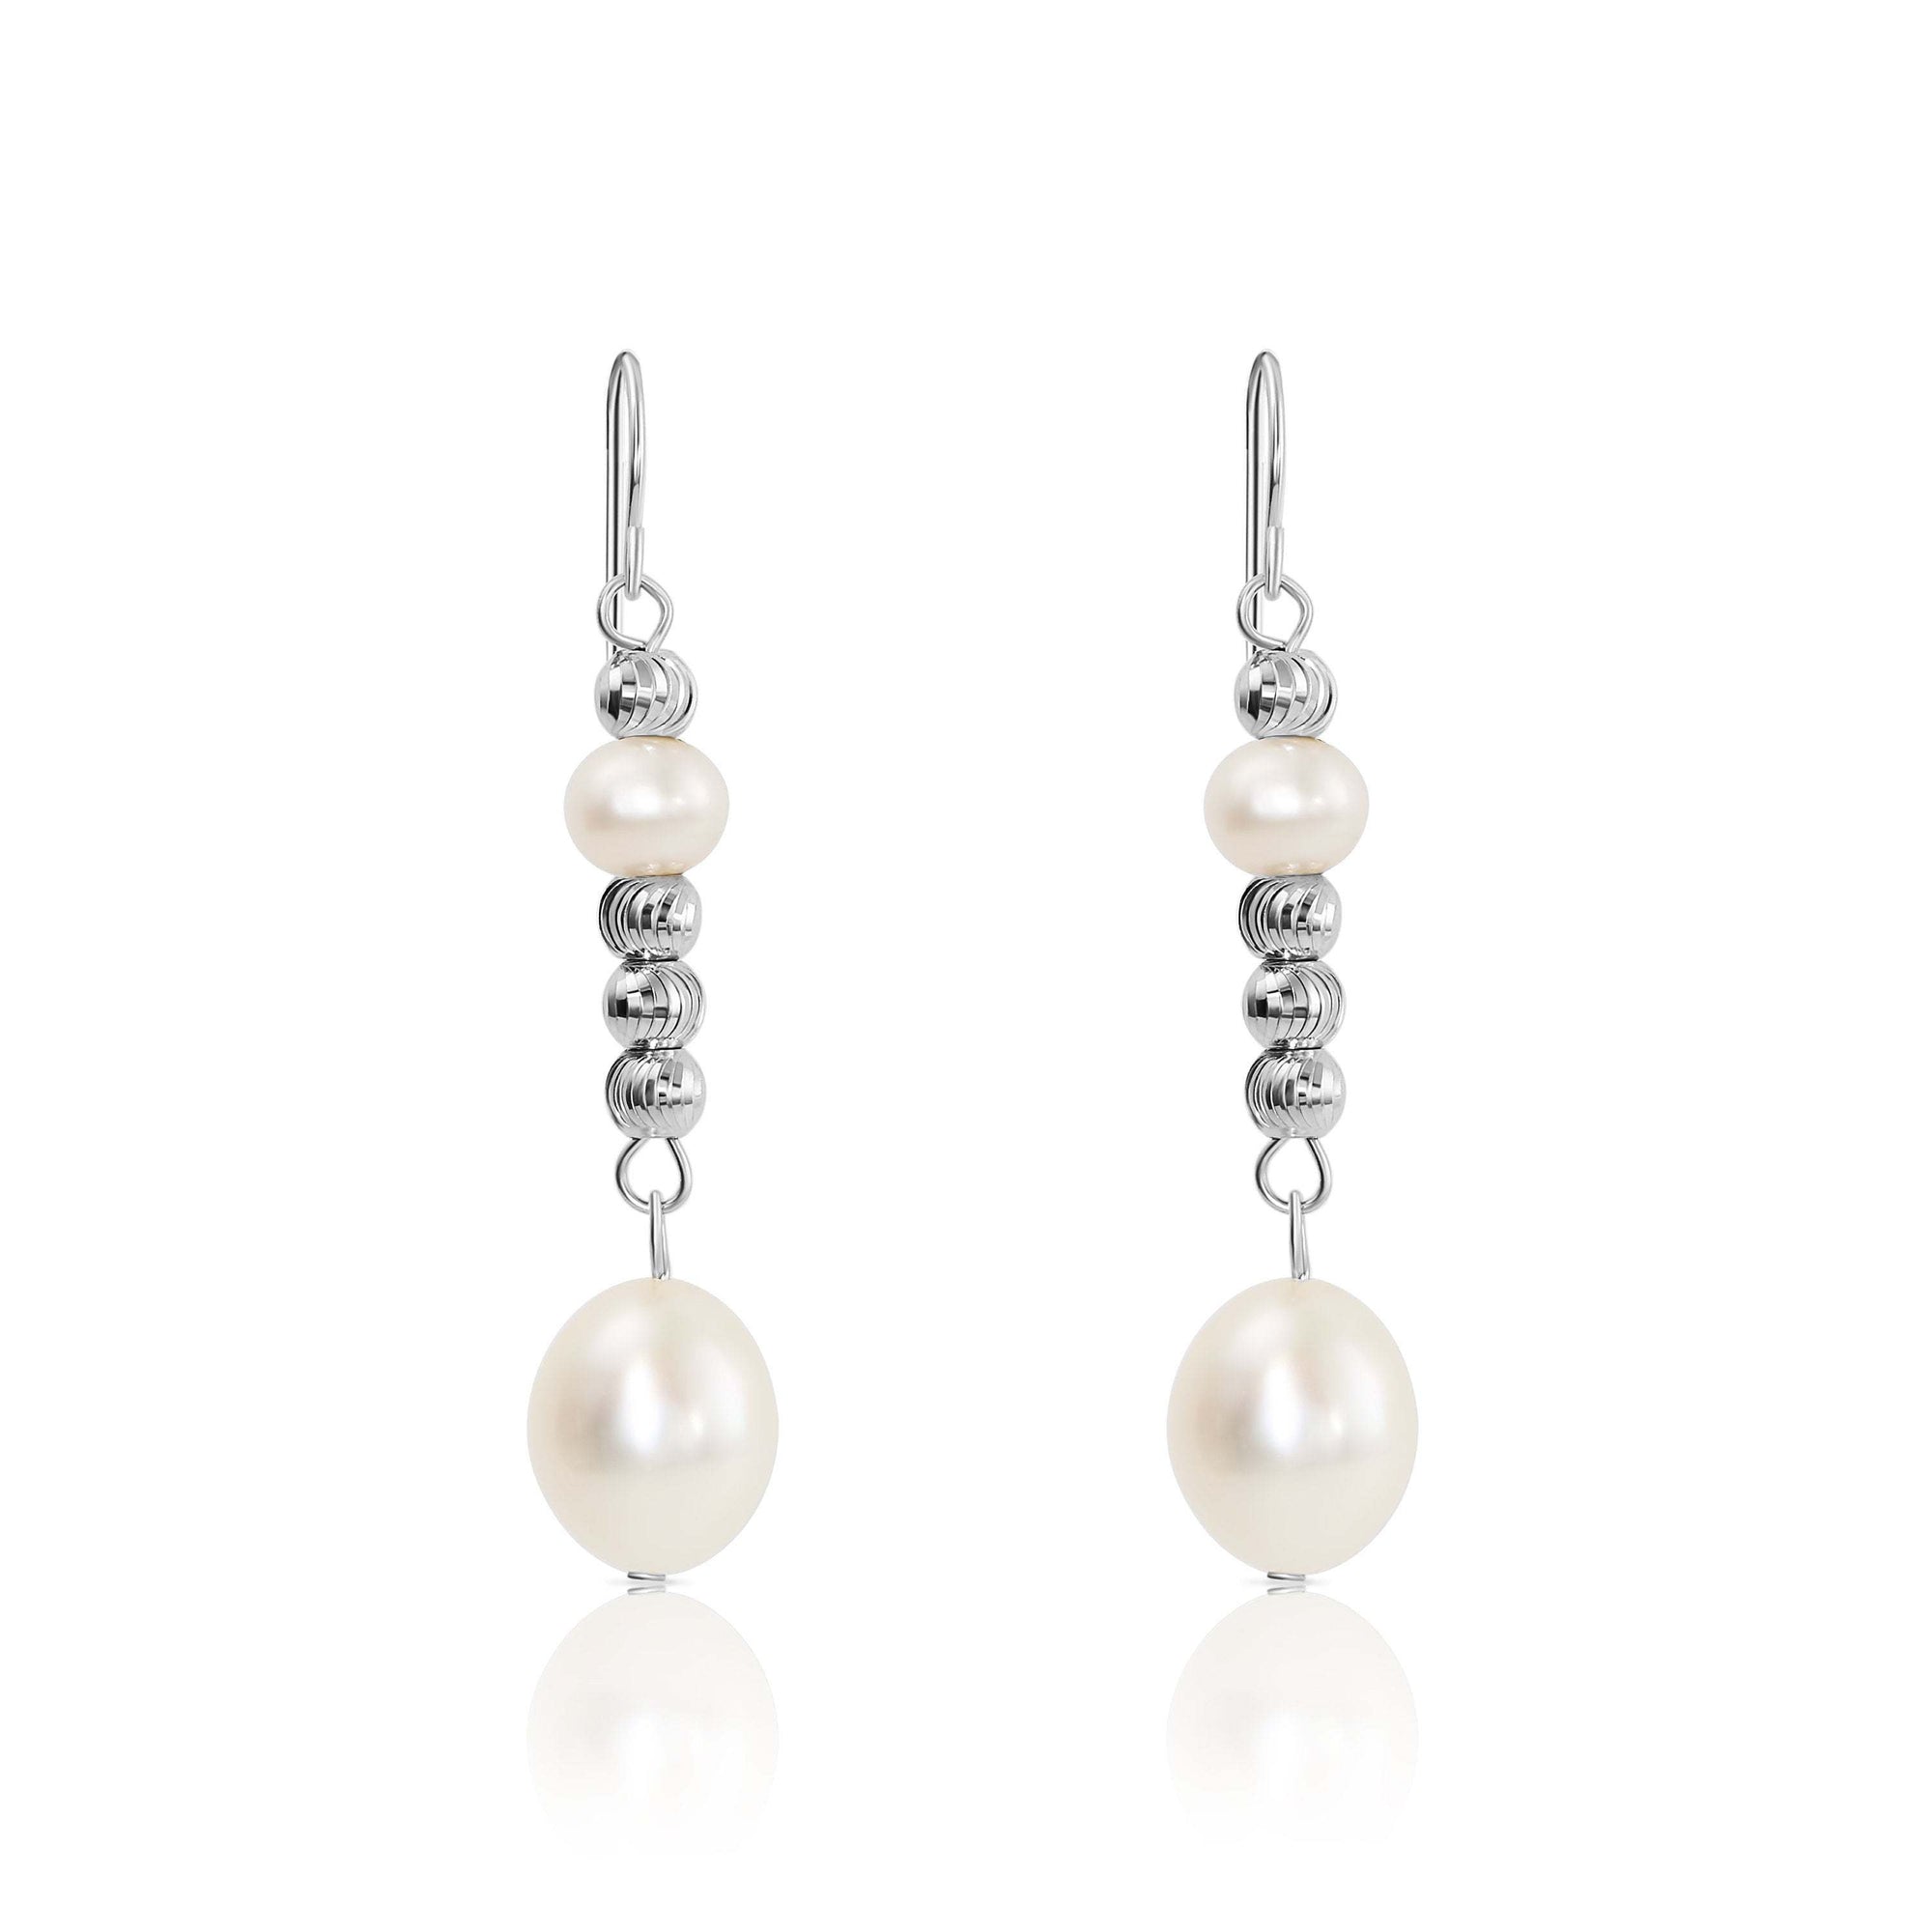 CZ Handmade Pearl Earrings, Dangle Earrings in Sterling Silver